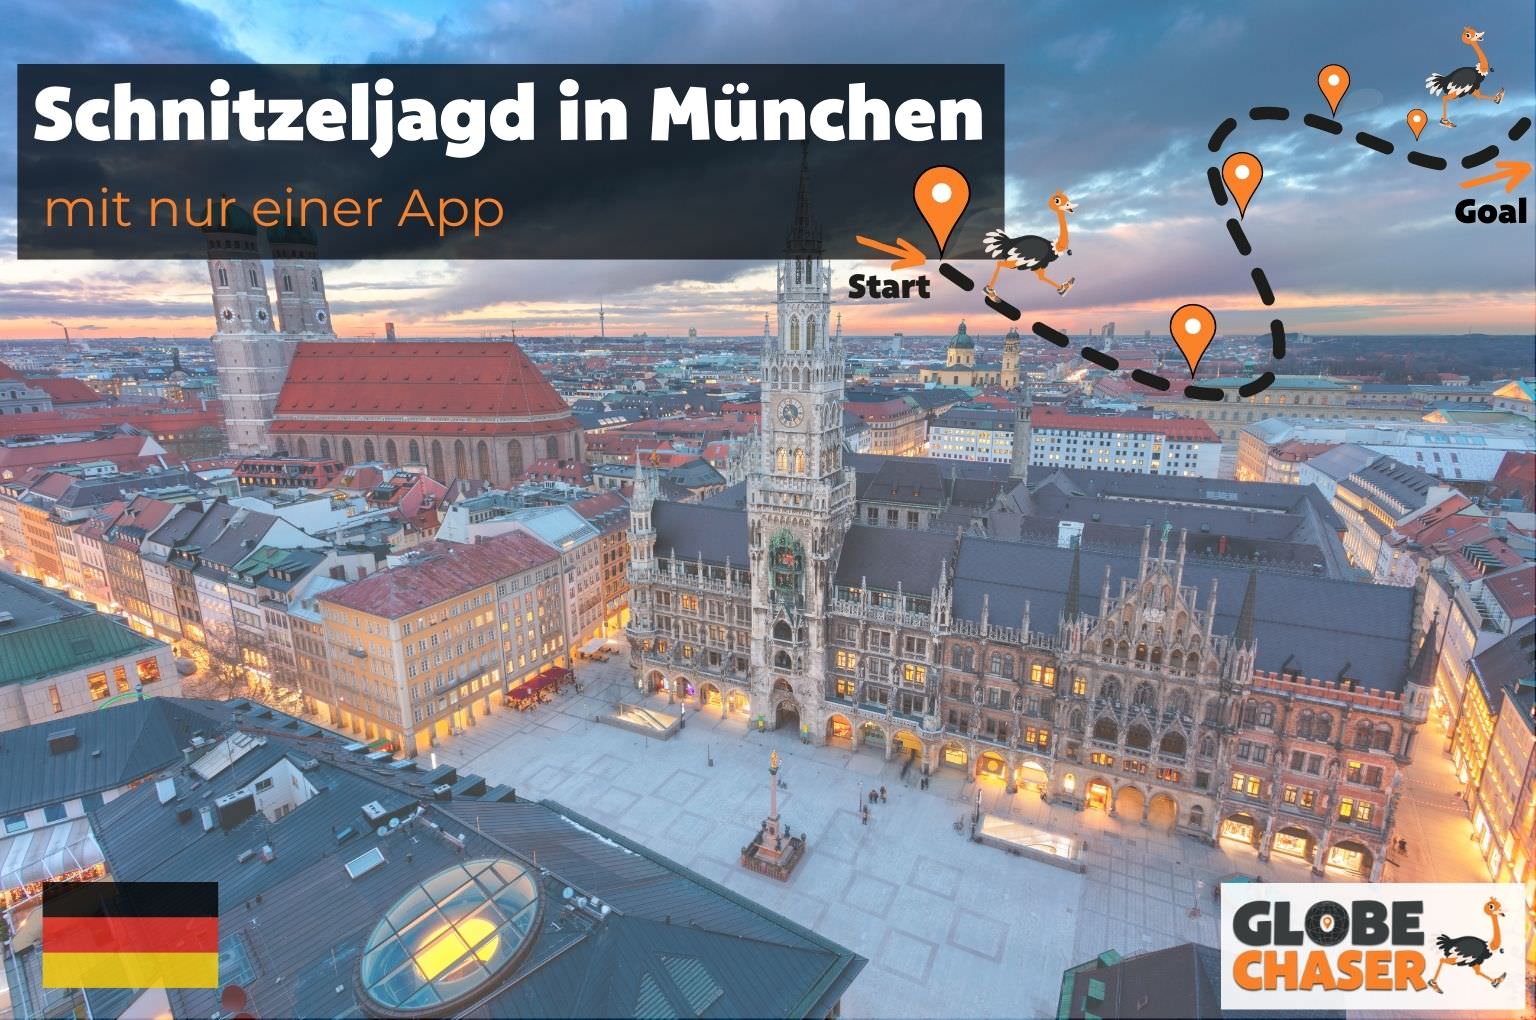 Schnitzeljagd in München mit App - Globe Chaser Erlebnisse Deutschland